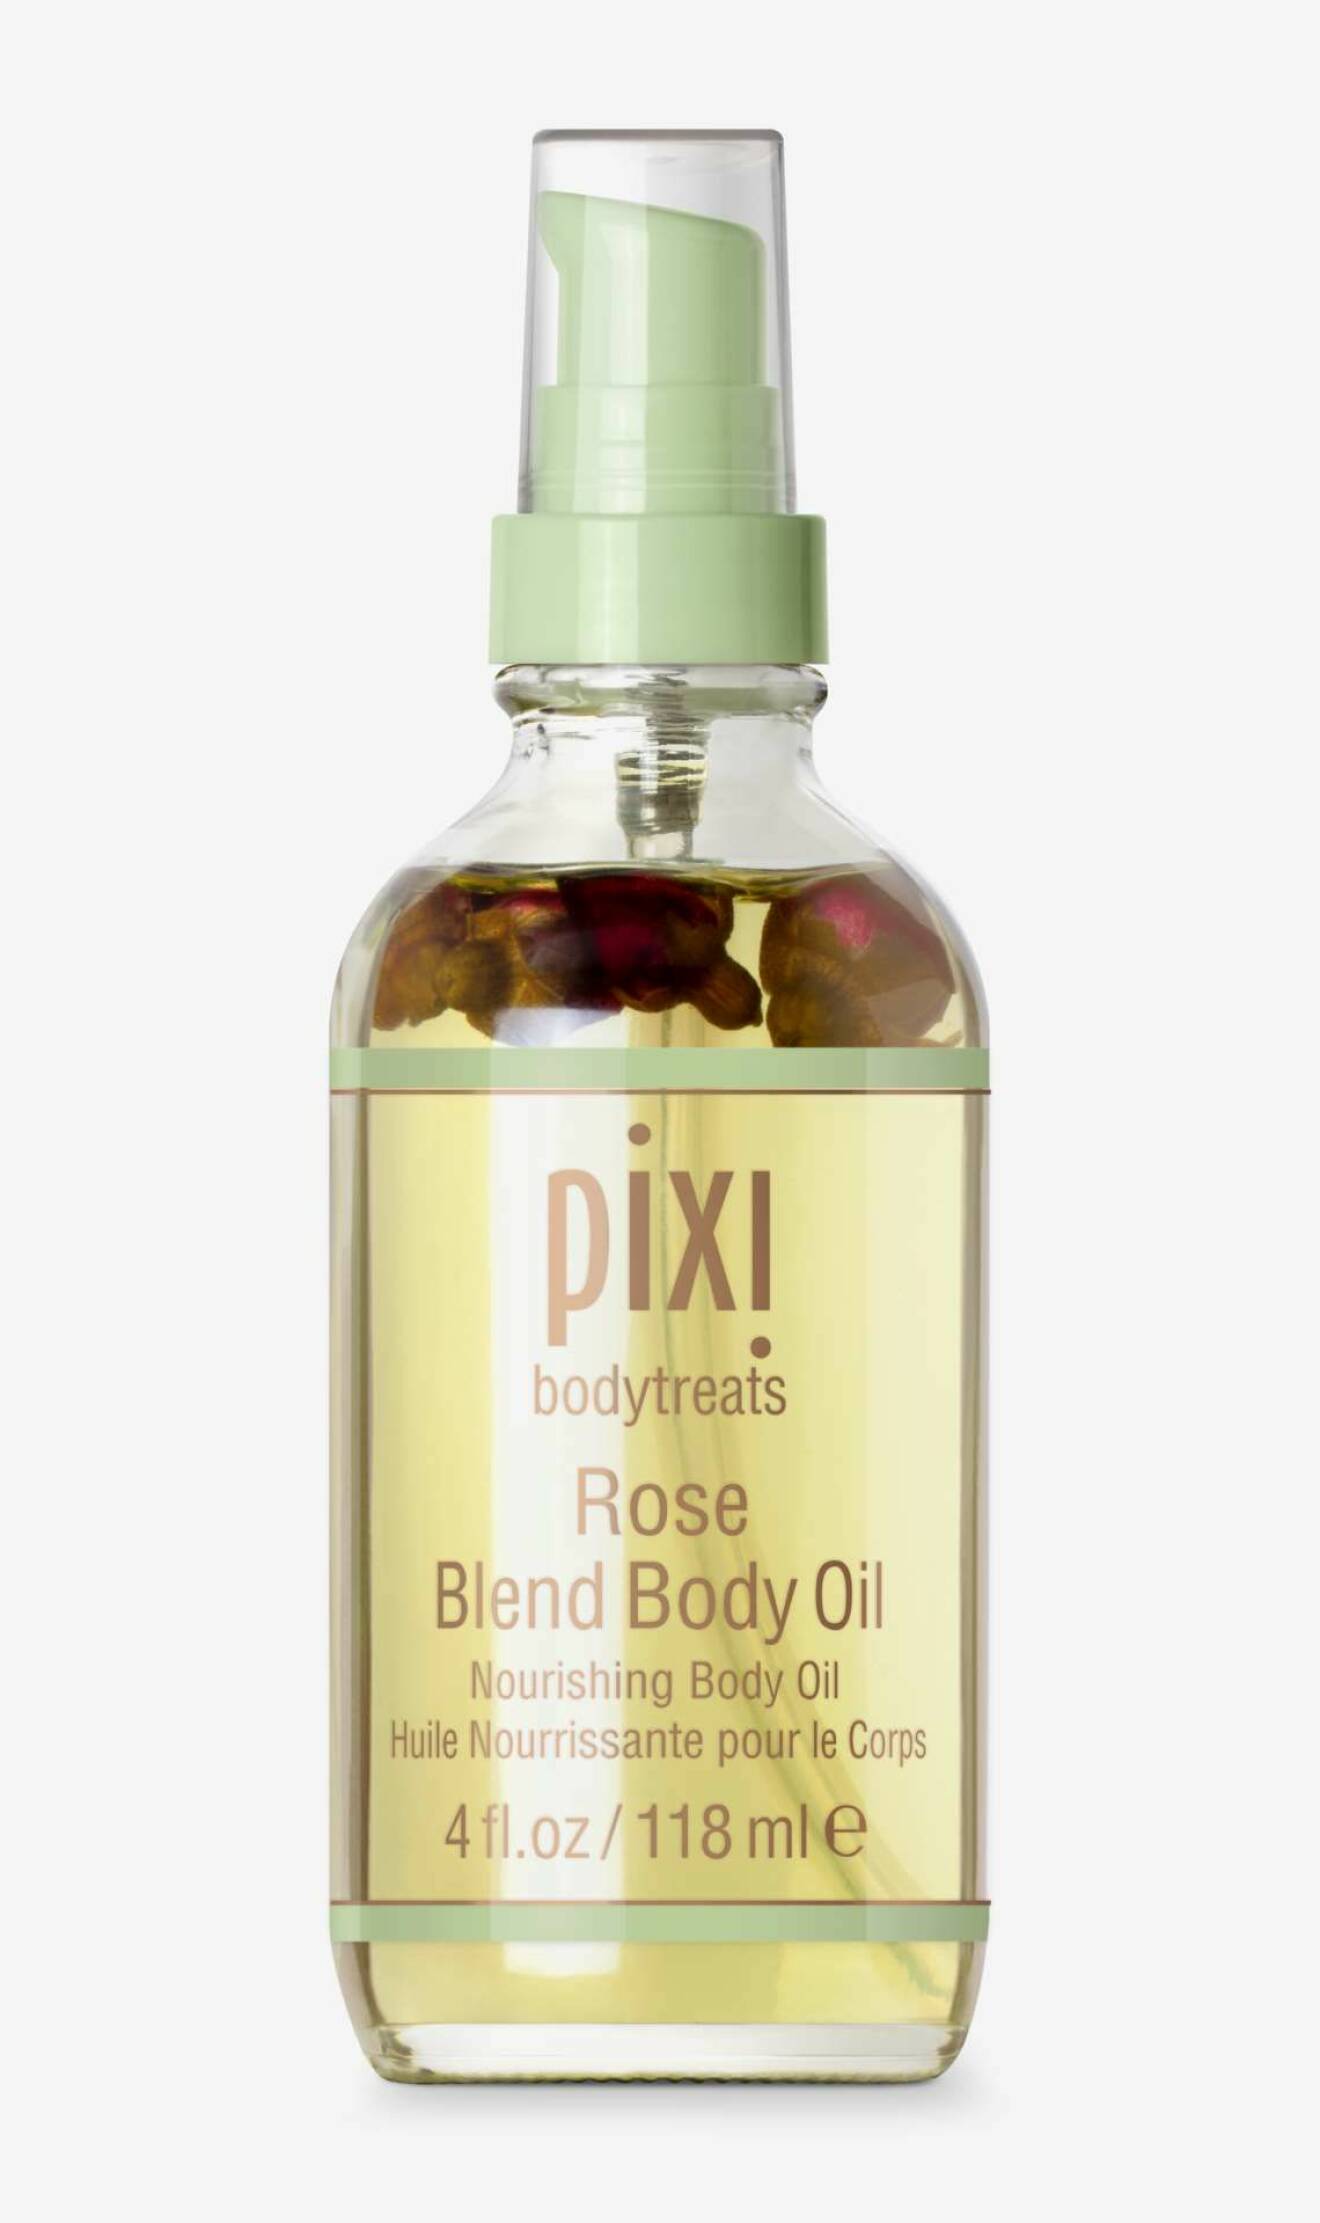 Rose blend body oil från Pixie.